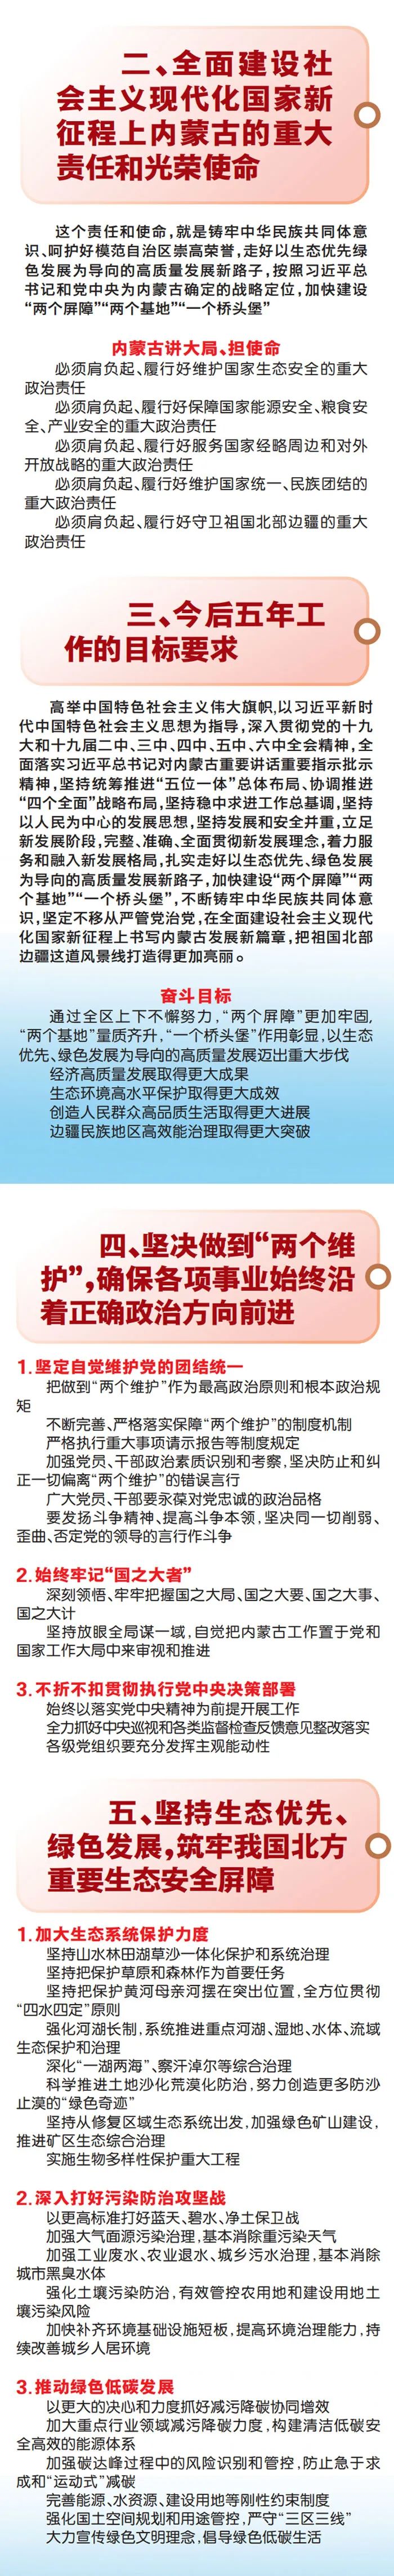 图解丨自治区第十一次党代会报告重点来了 (http://www.airsdon.com/) 国内 第4张